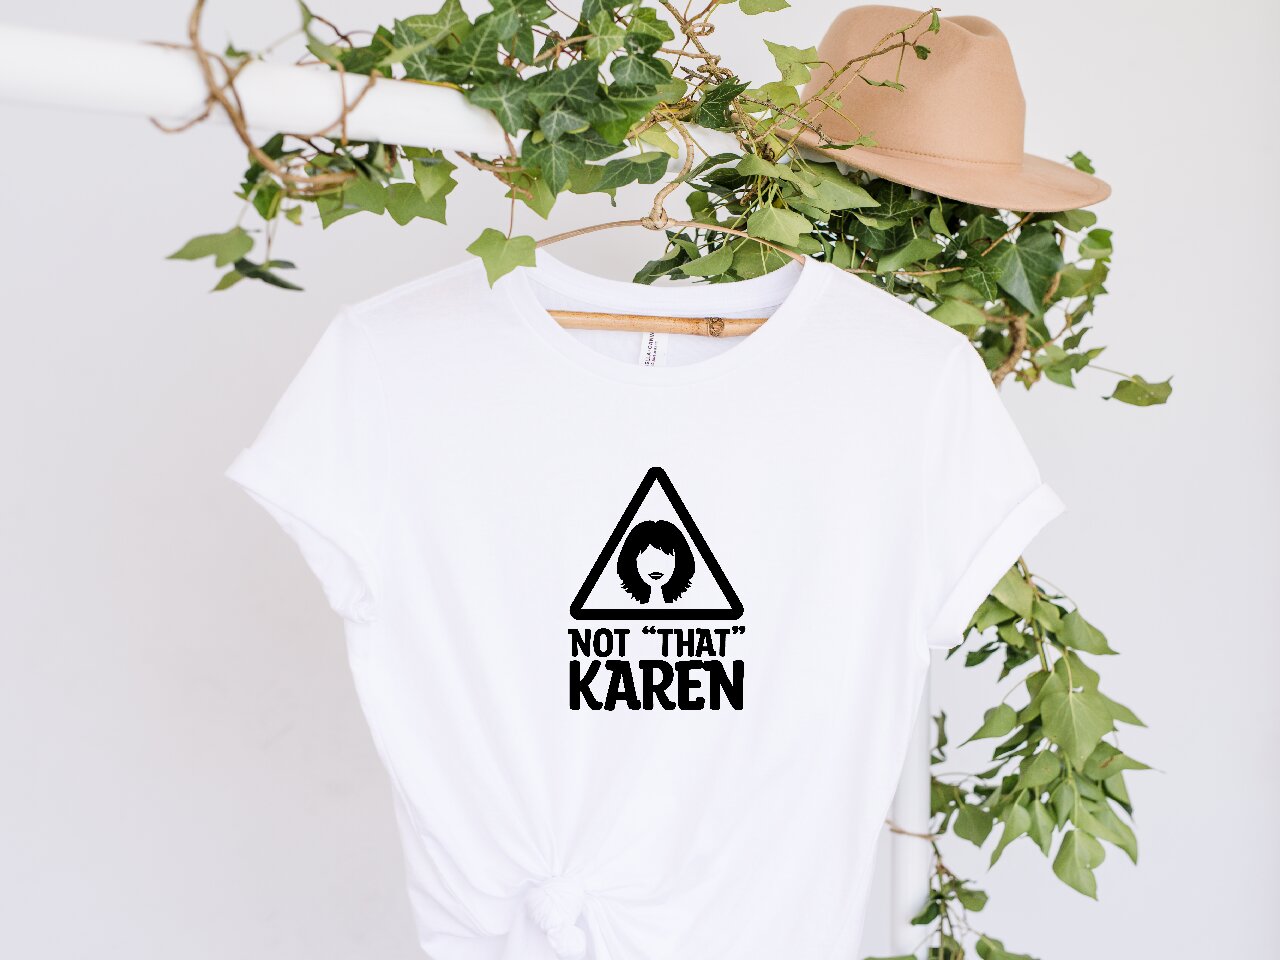 Not "That" Karen - T-Shirt